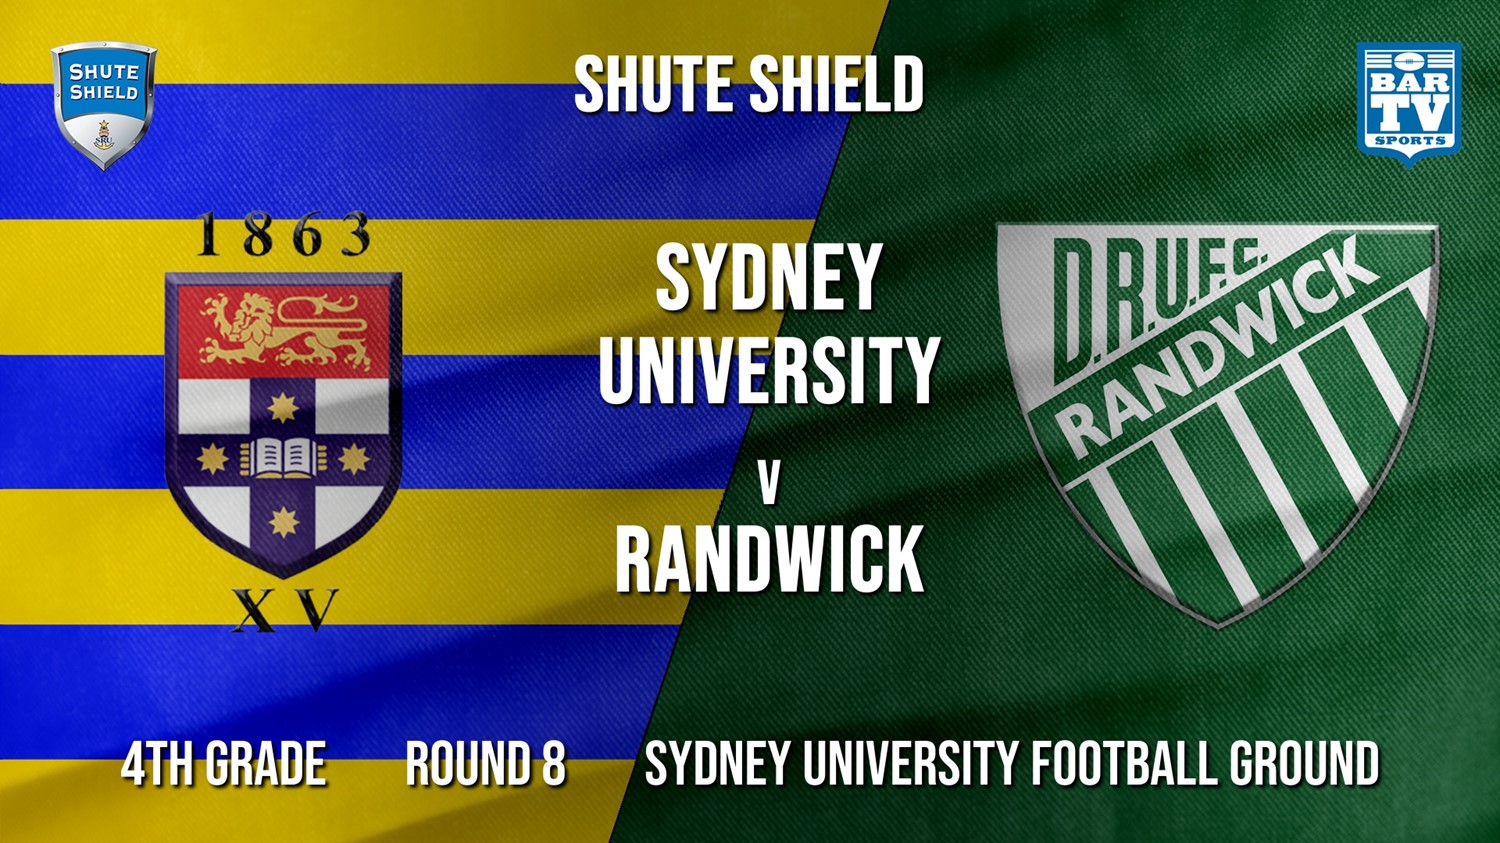 Shute Shield Round 10 - 4th Grade - Sydney University v Randwick Minigame Slate Image